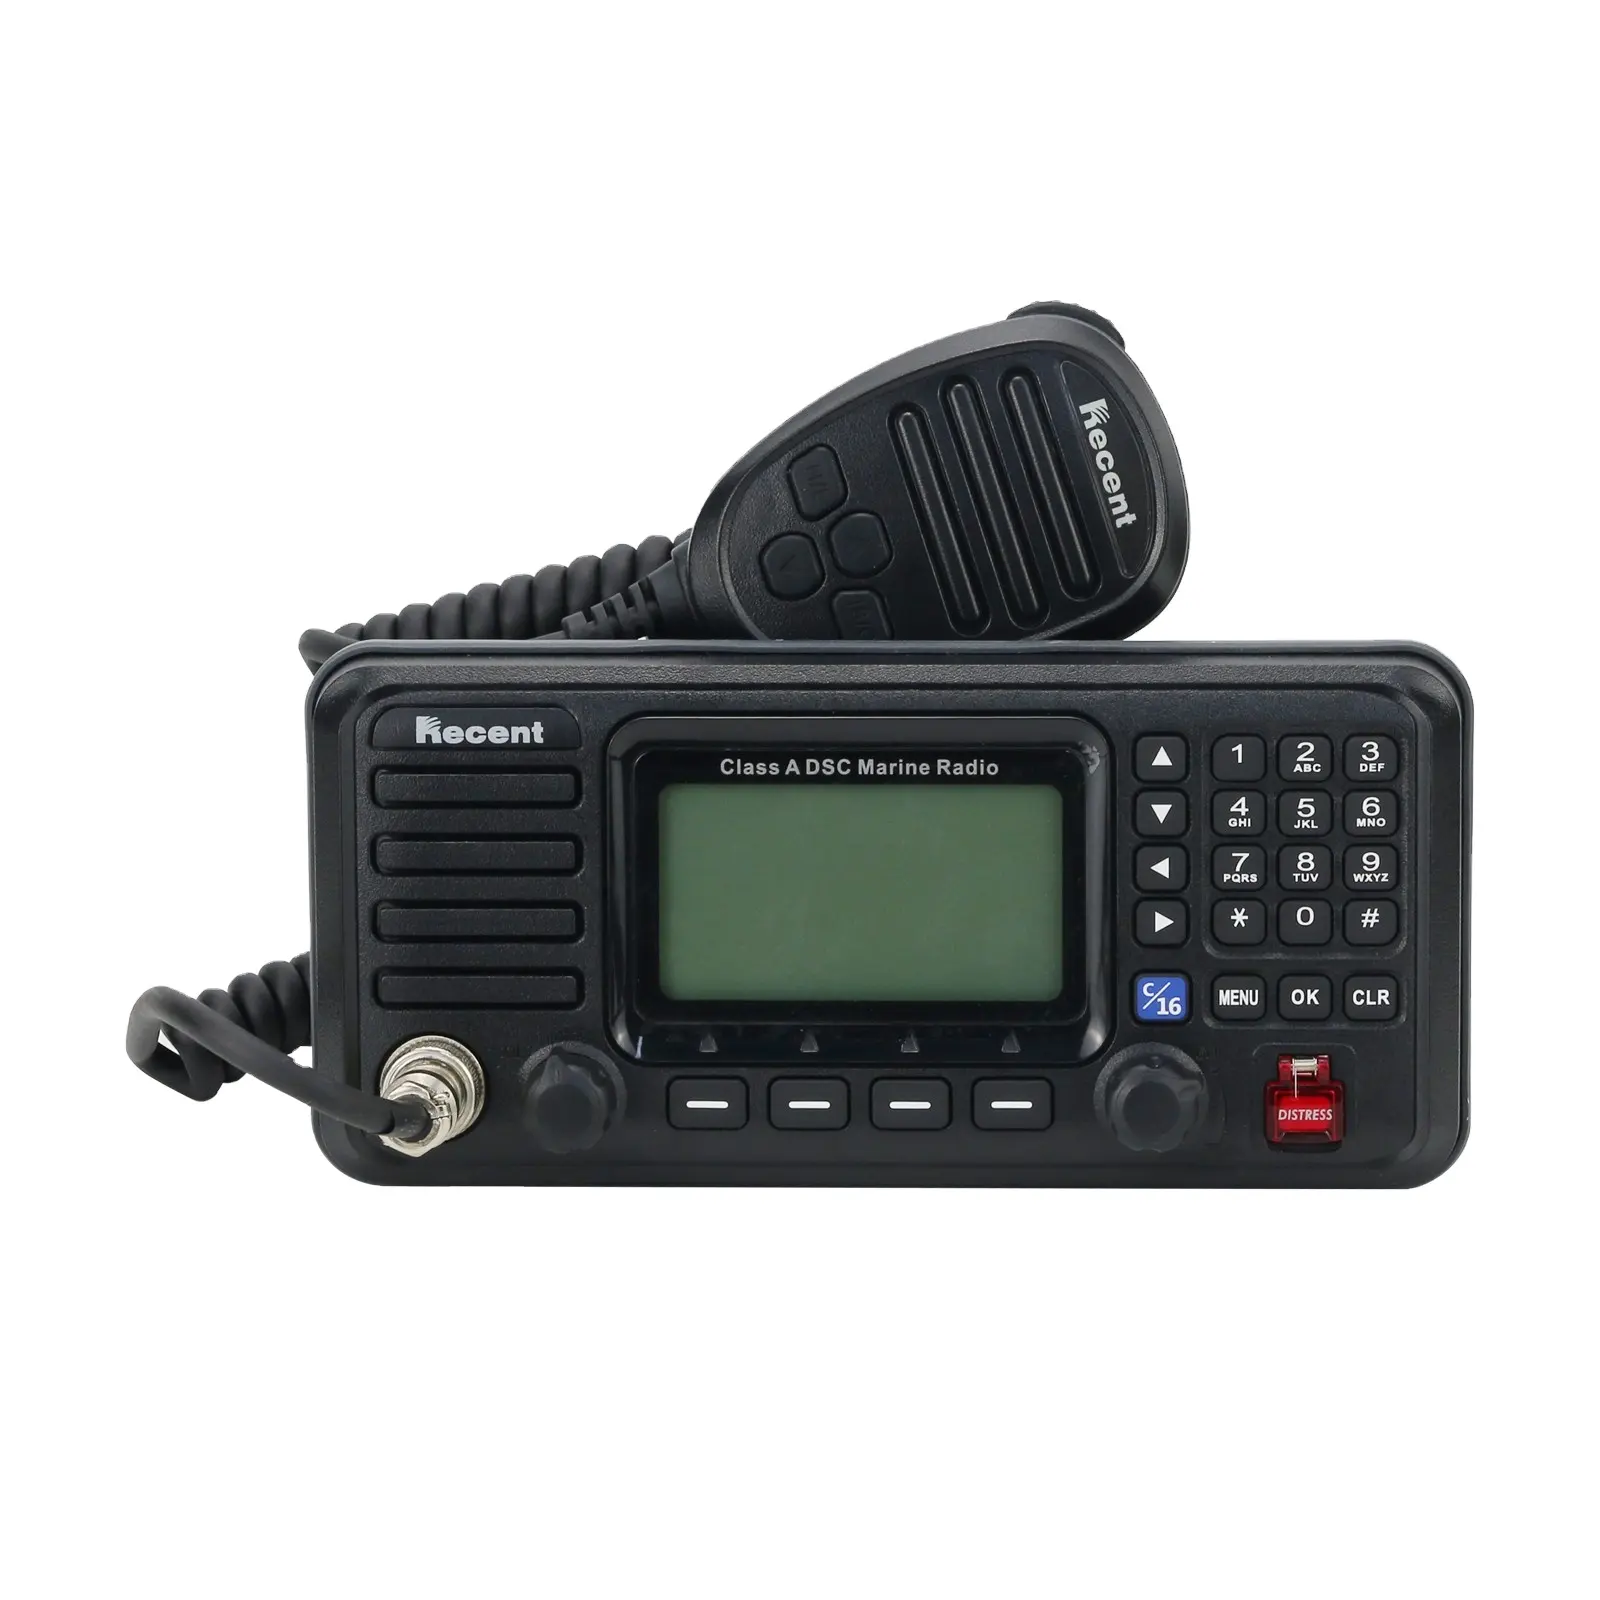 جهاز إرسال واستقبال RS-510M 25 واط VHF مائي من الفئة أ DSC يطبق على السفن والقوارب